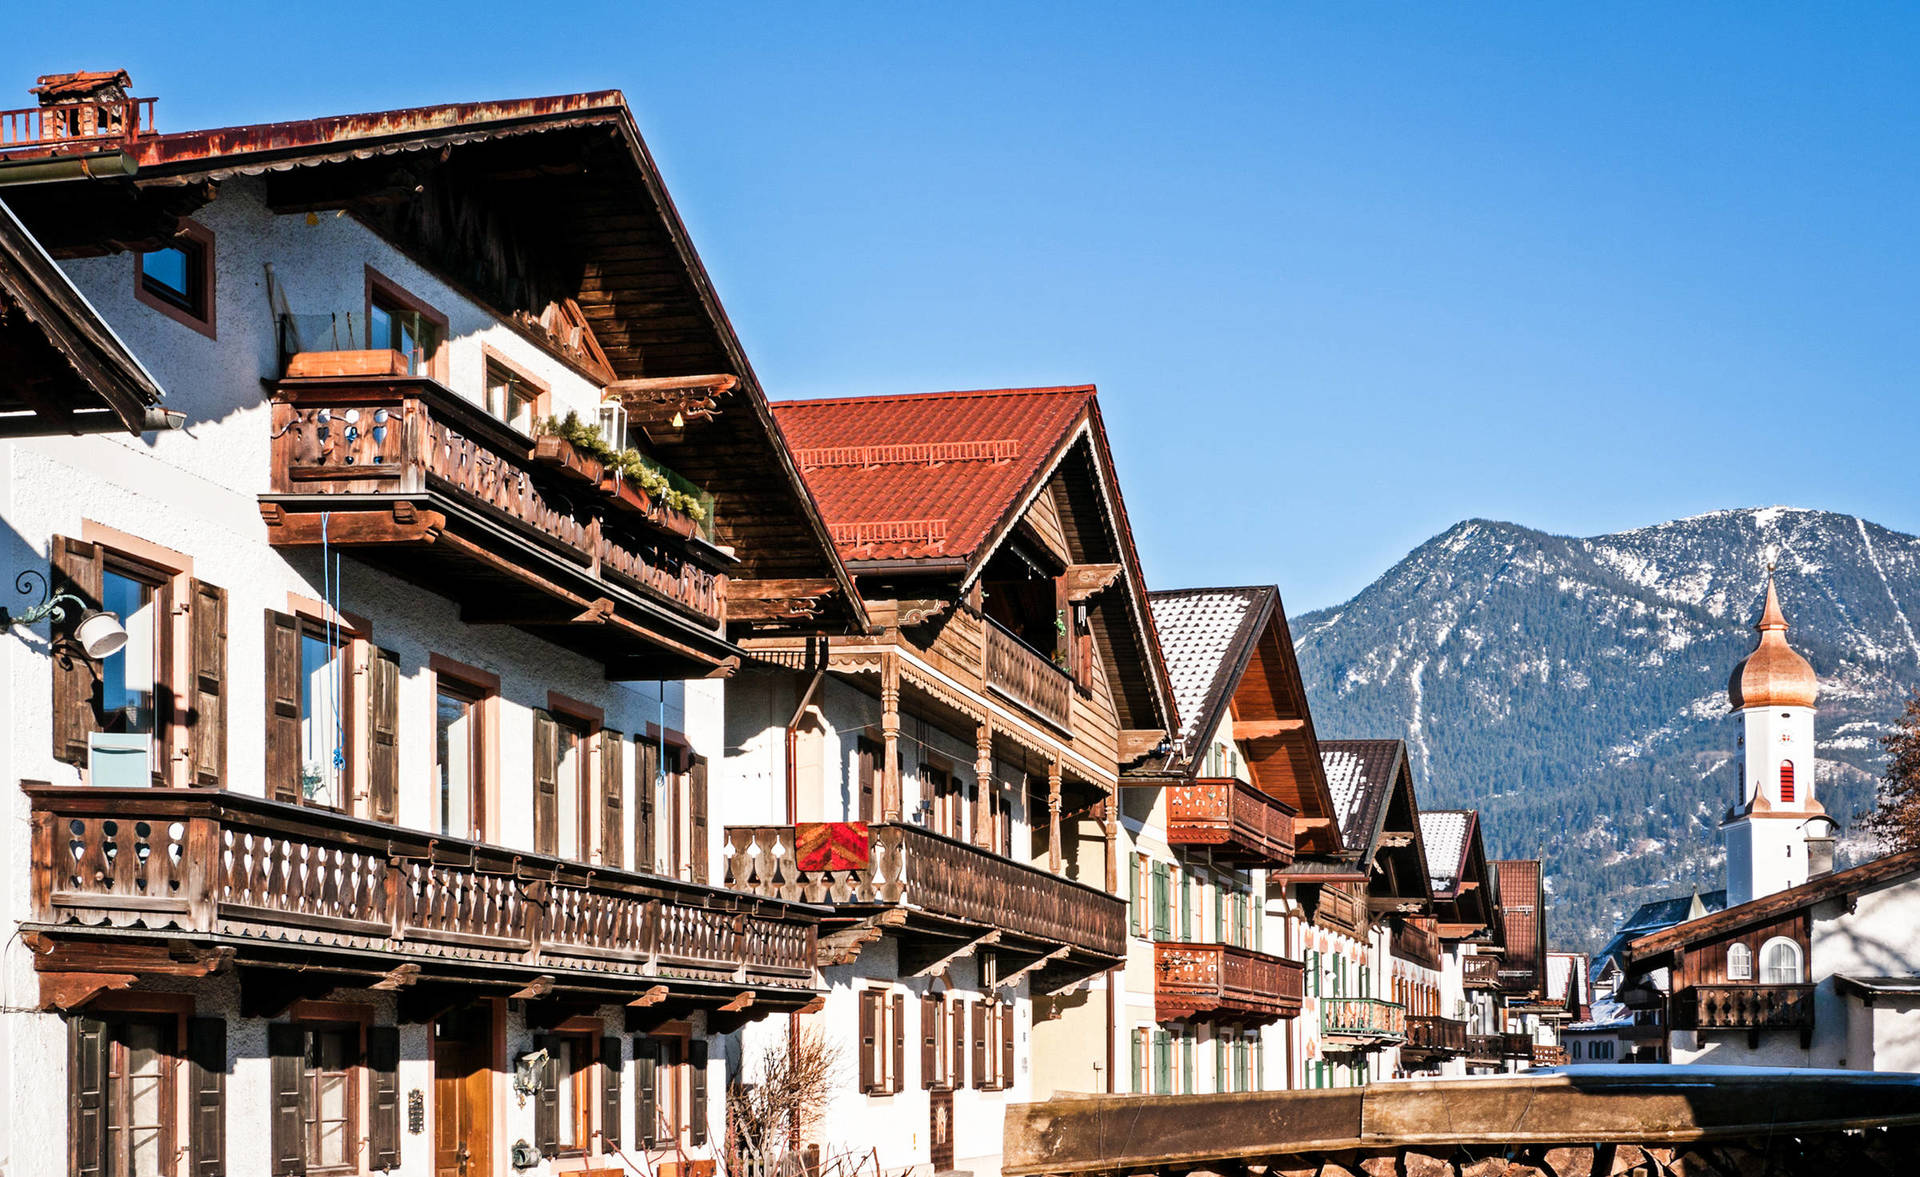 Dein Stellenangebot in Garmisch-Partenkirchen bei H-Hotels.com